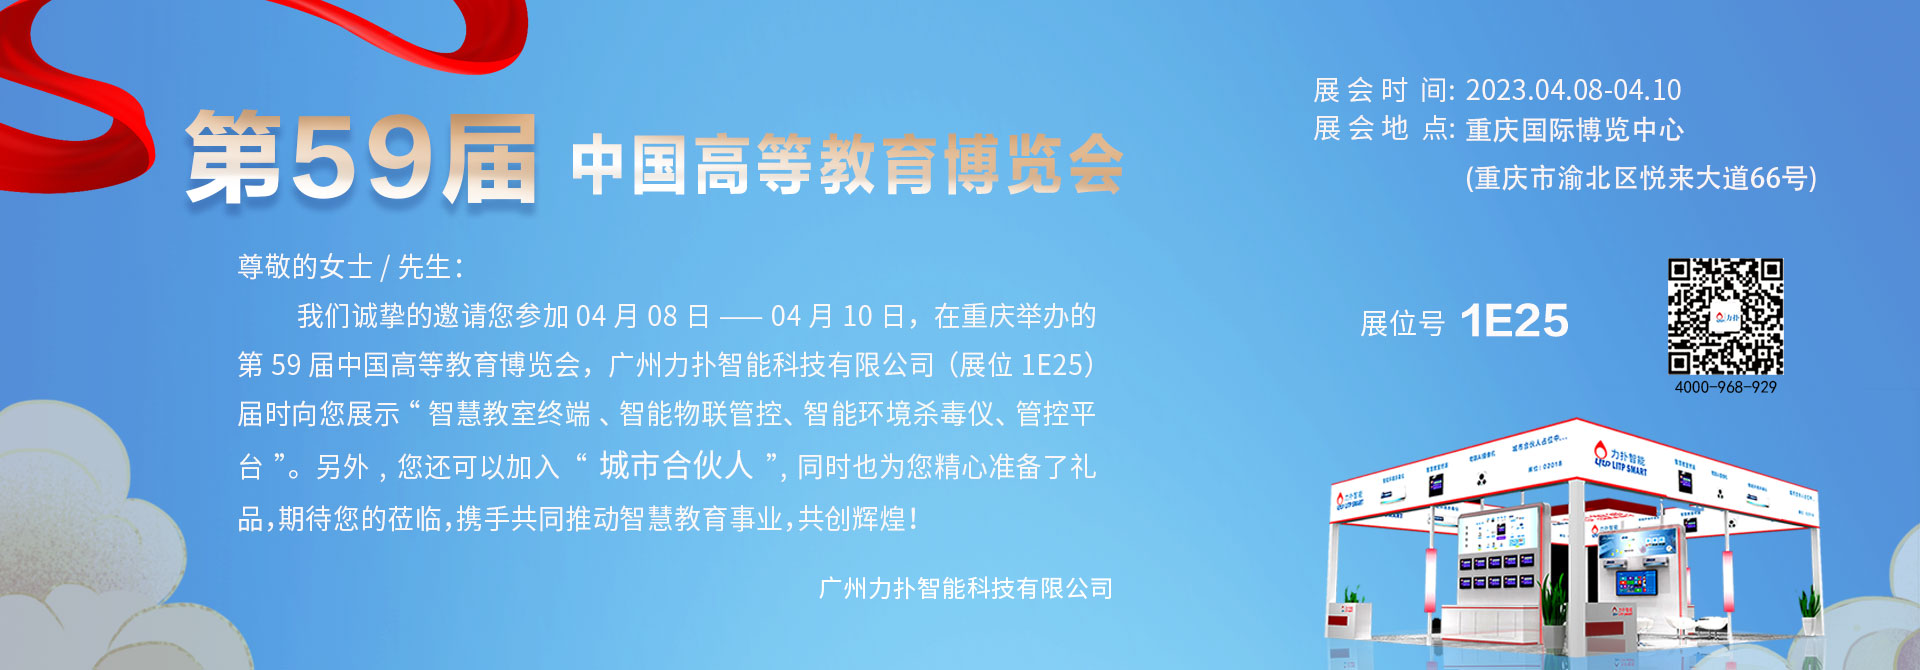 广州力扑智能第80届中国教育装备展示会